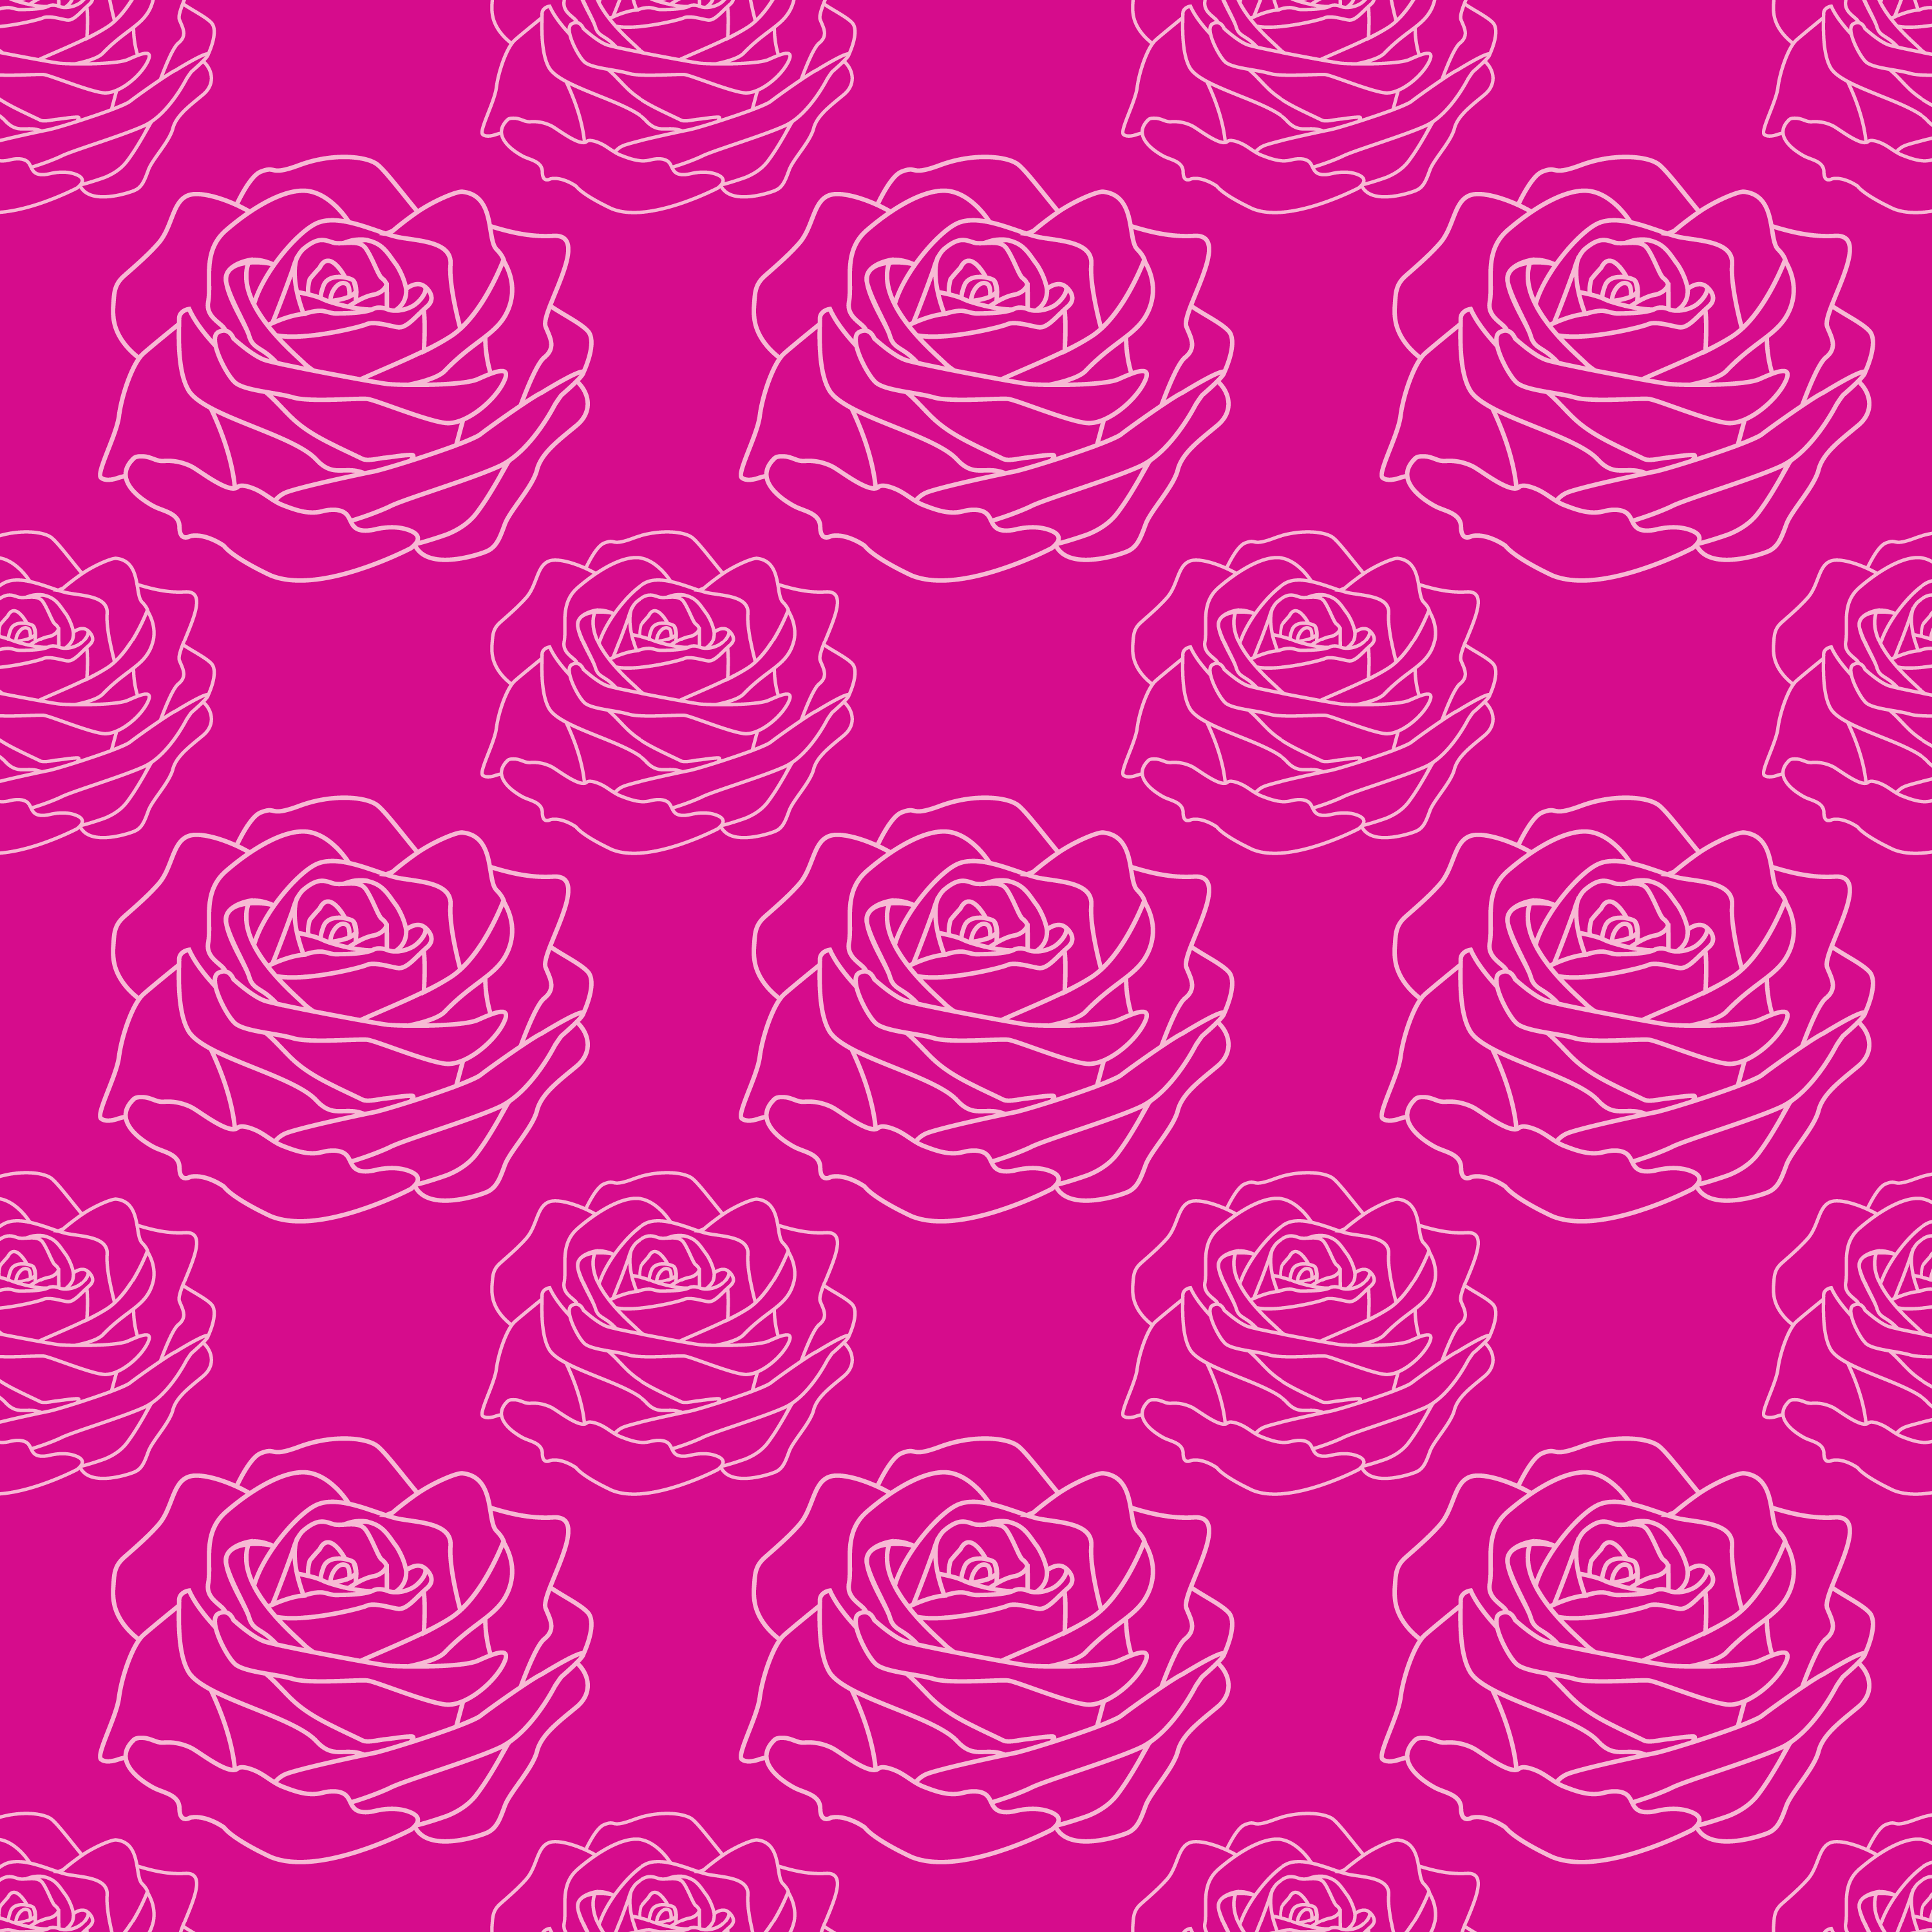 壁紙 背景イラスト 花の模様 柄 パターン No 049 赤紫のバラ模様 白縁